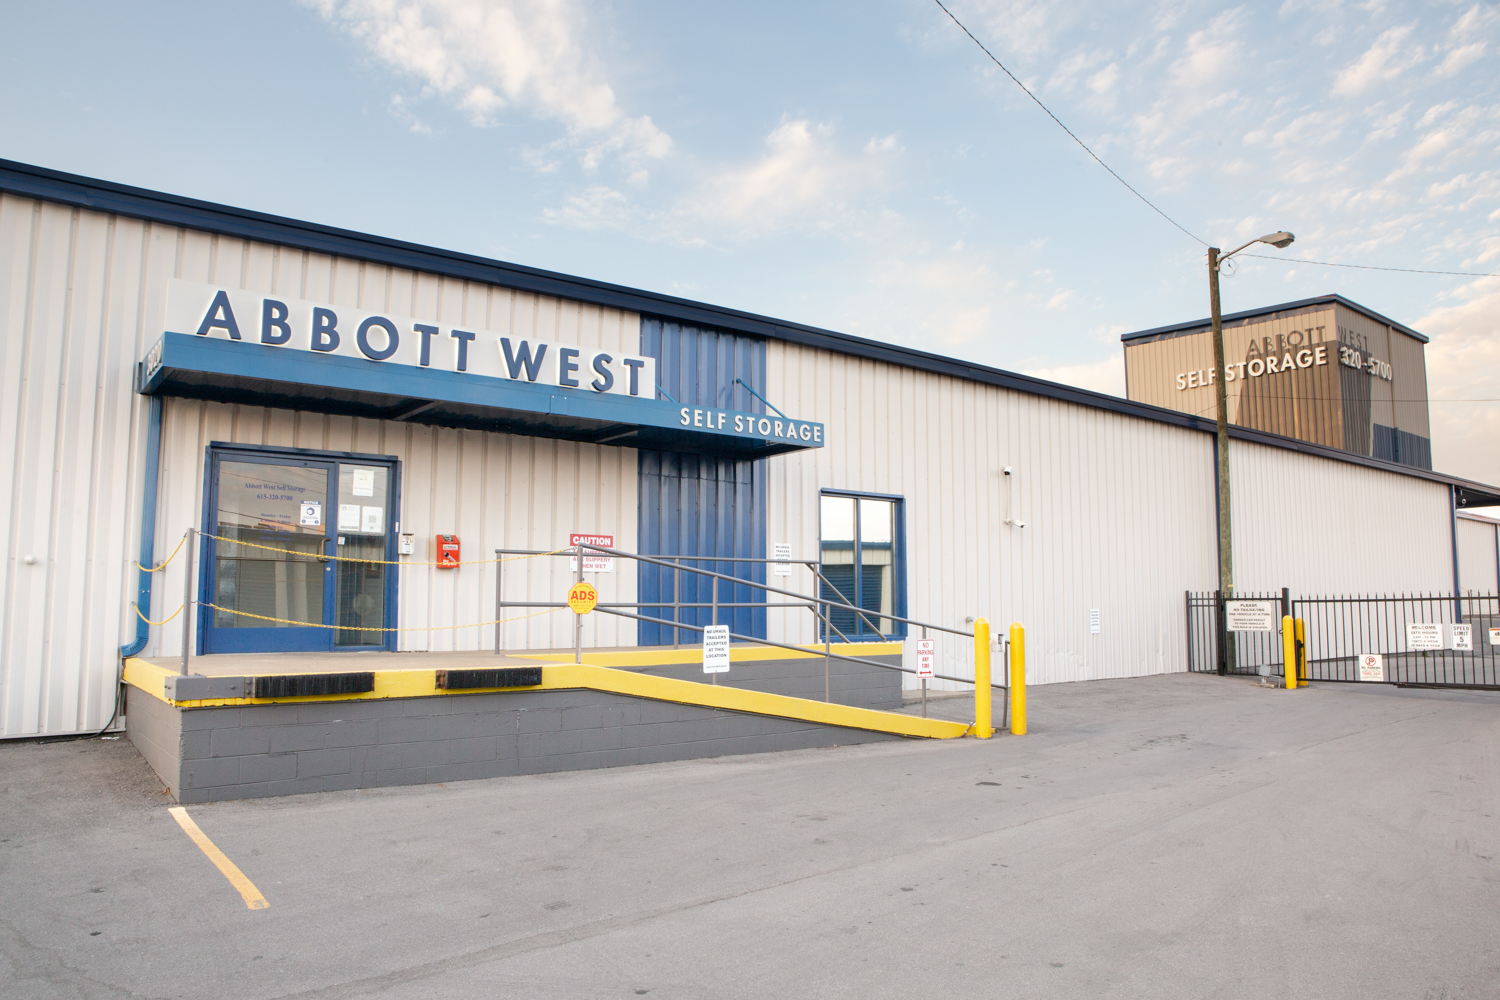 Abbott West Self Storage - exterior